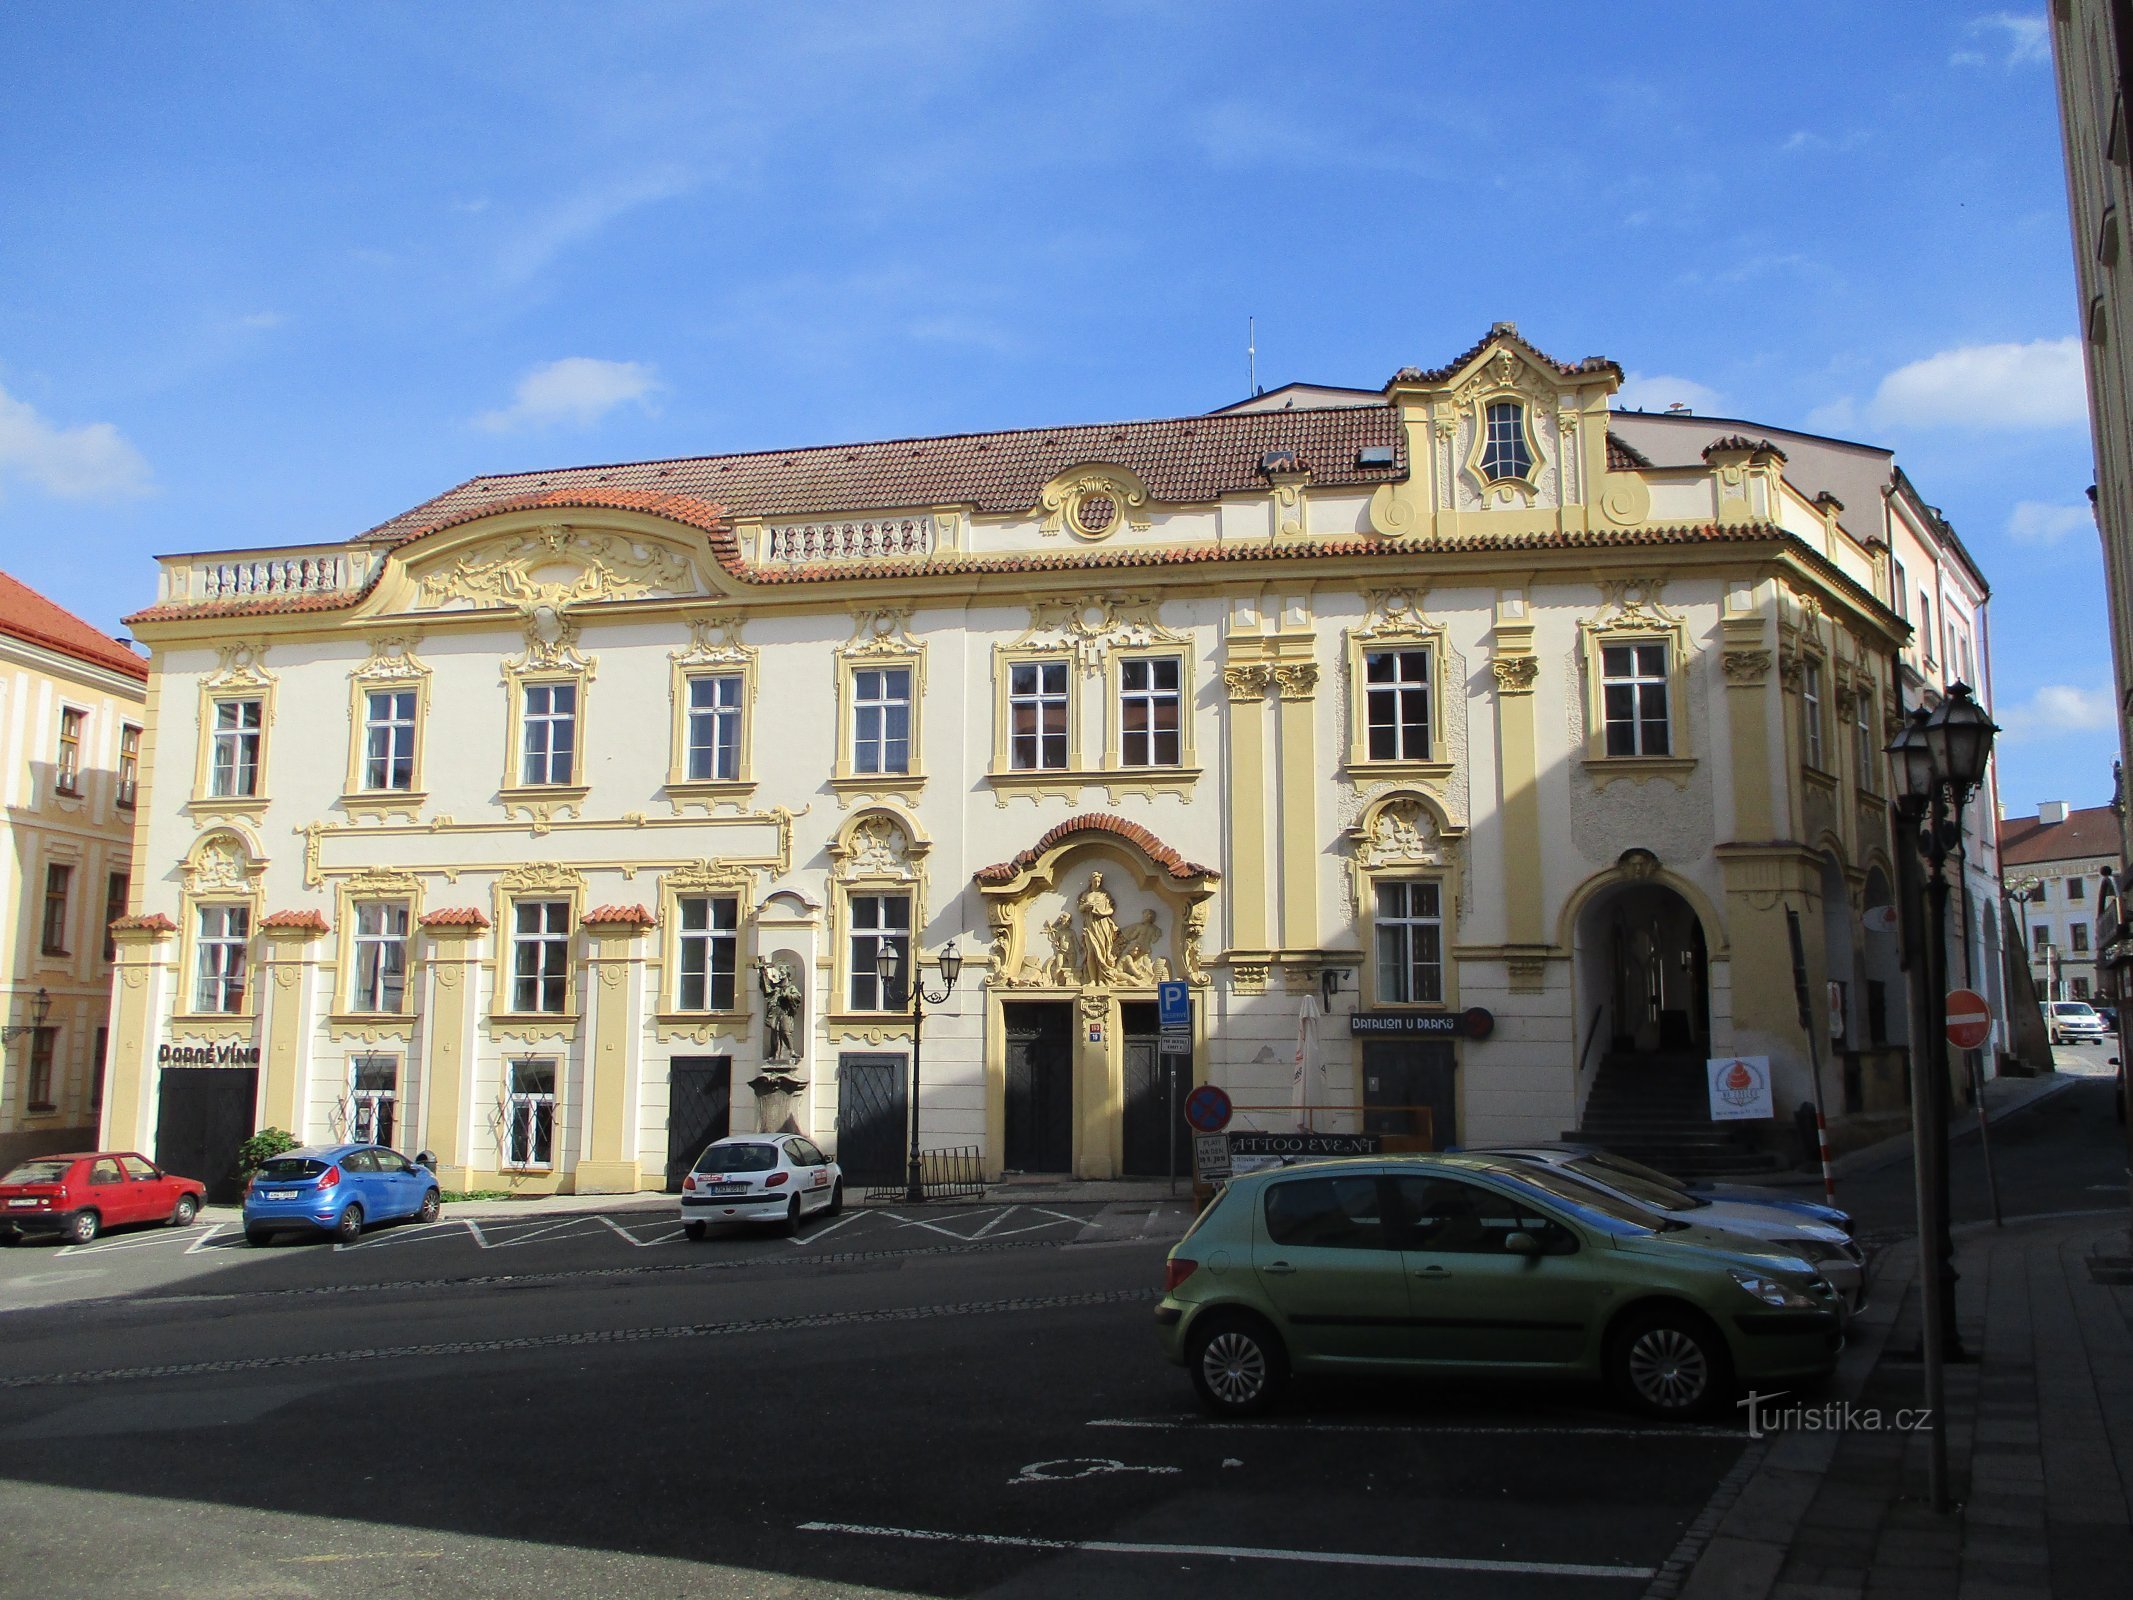 Antiguo almacén (V Kopečku no. 163, Hradec Králové, 15.9.2019/XNUMX/XNUMX)